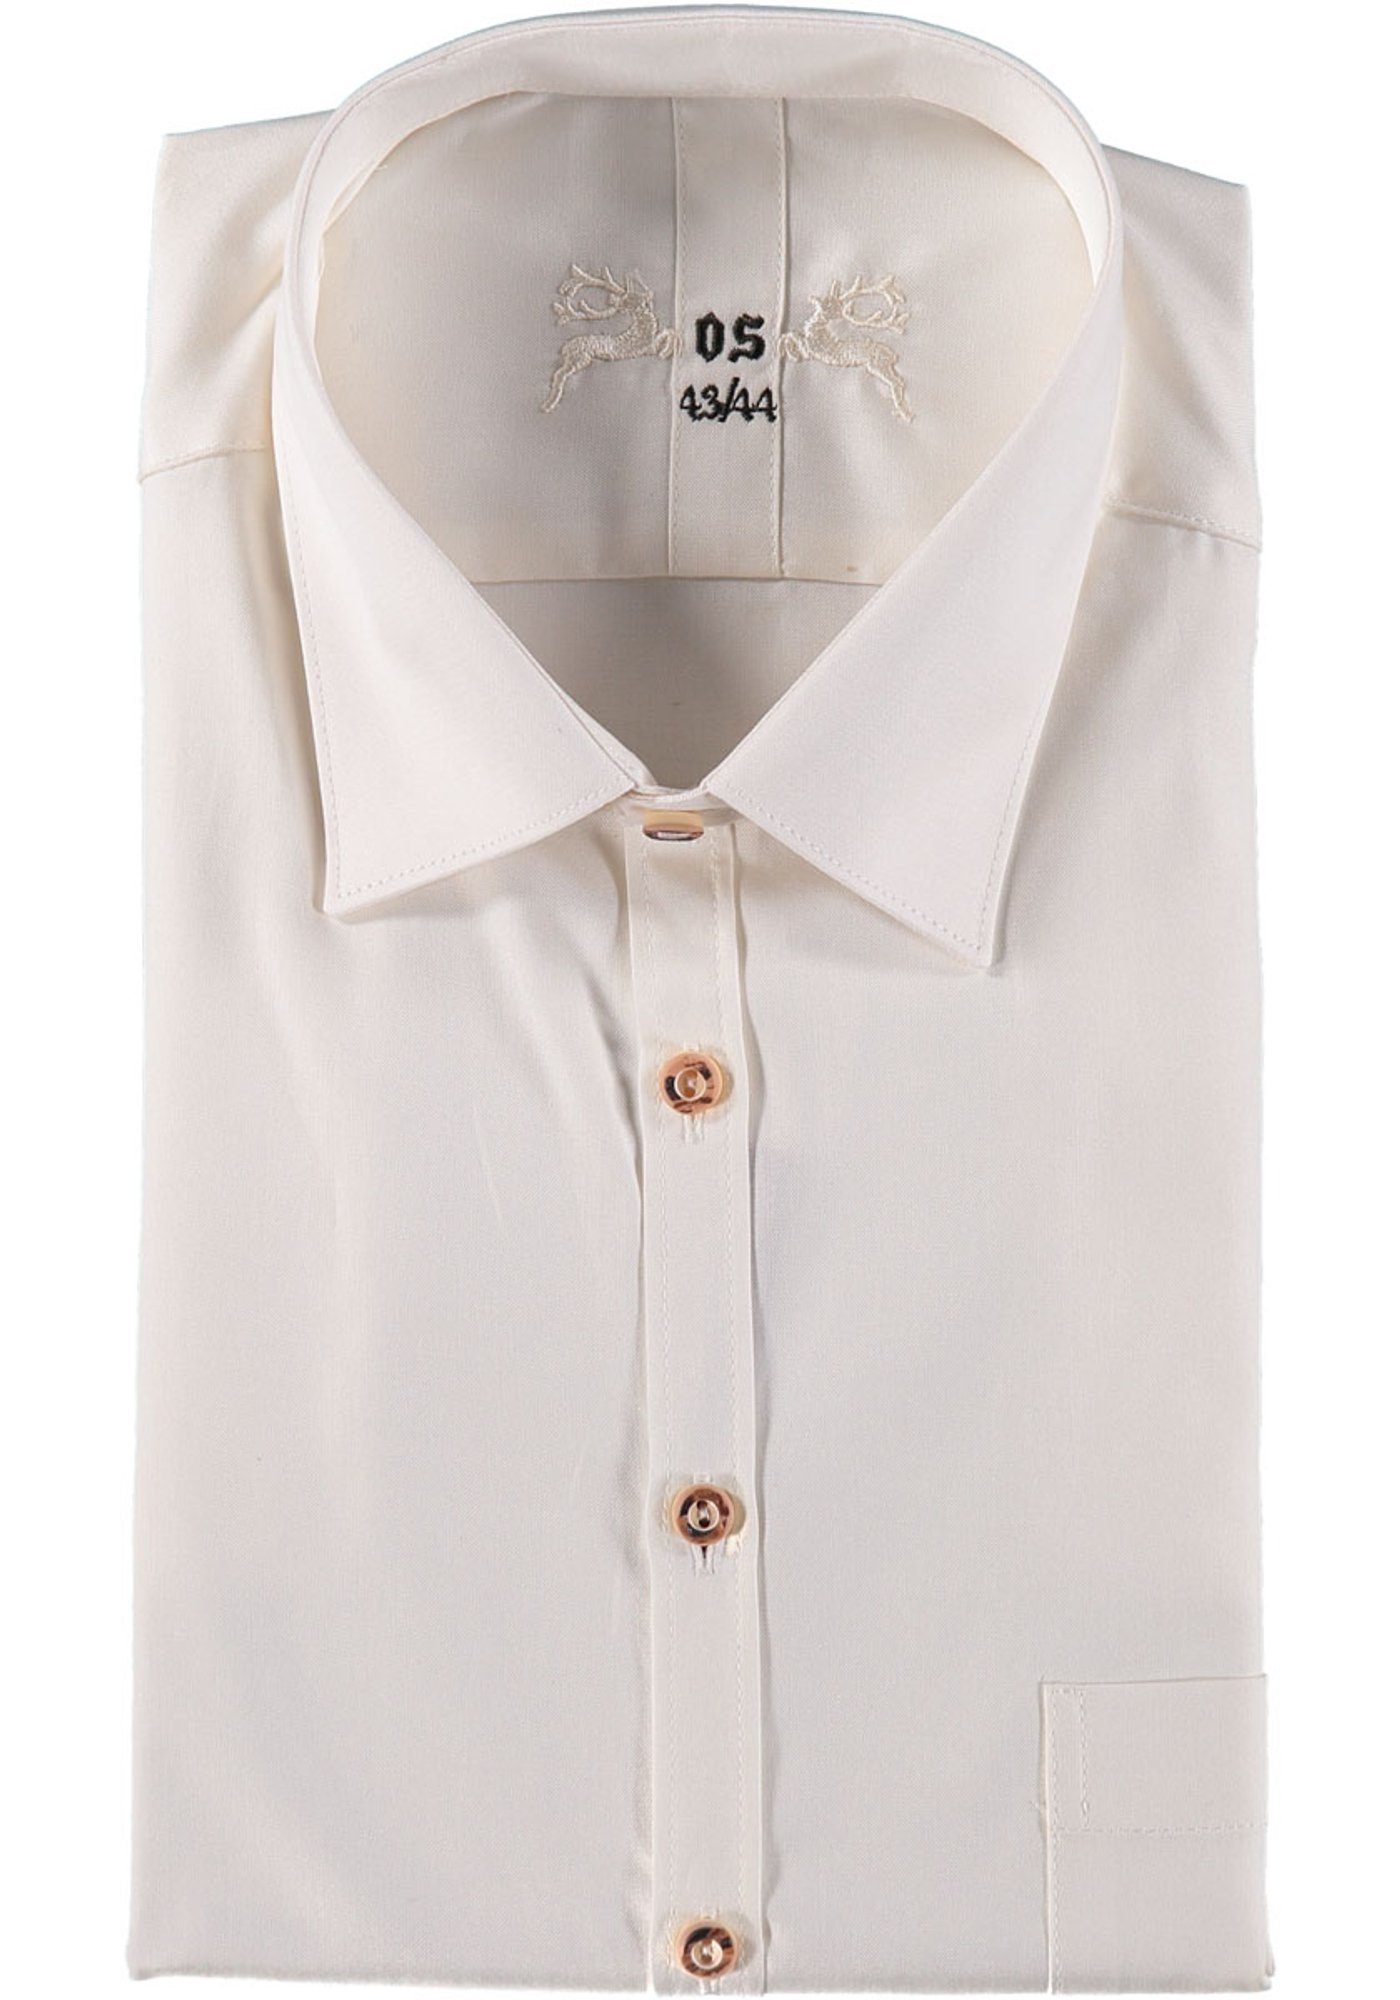 OS-Trachten Trachtenhemd Addoya Herren Langarmhemd mit aufgesetzter Brusttasche ecrue